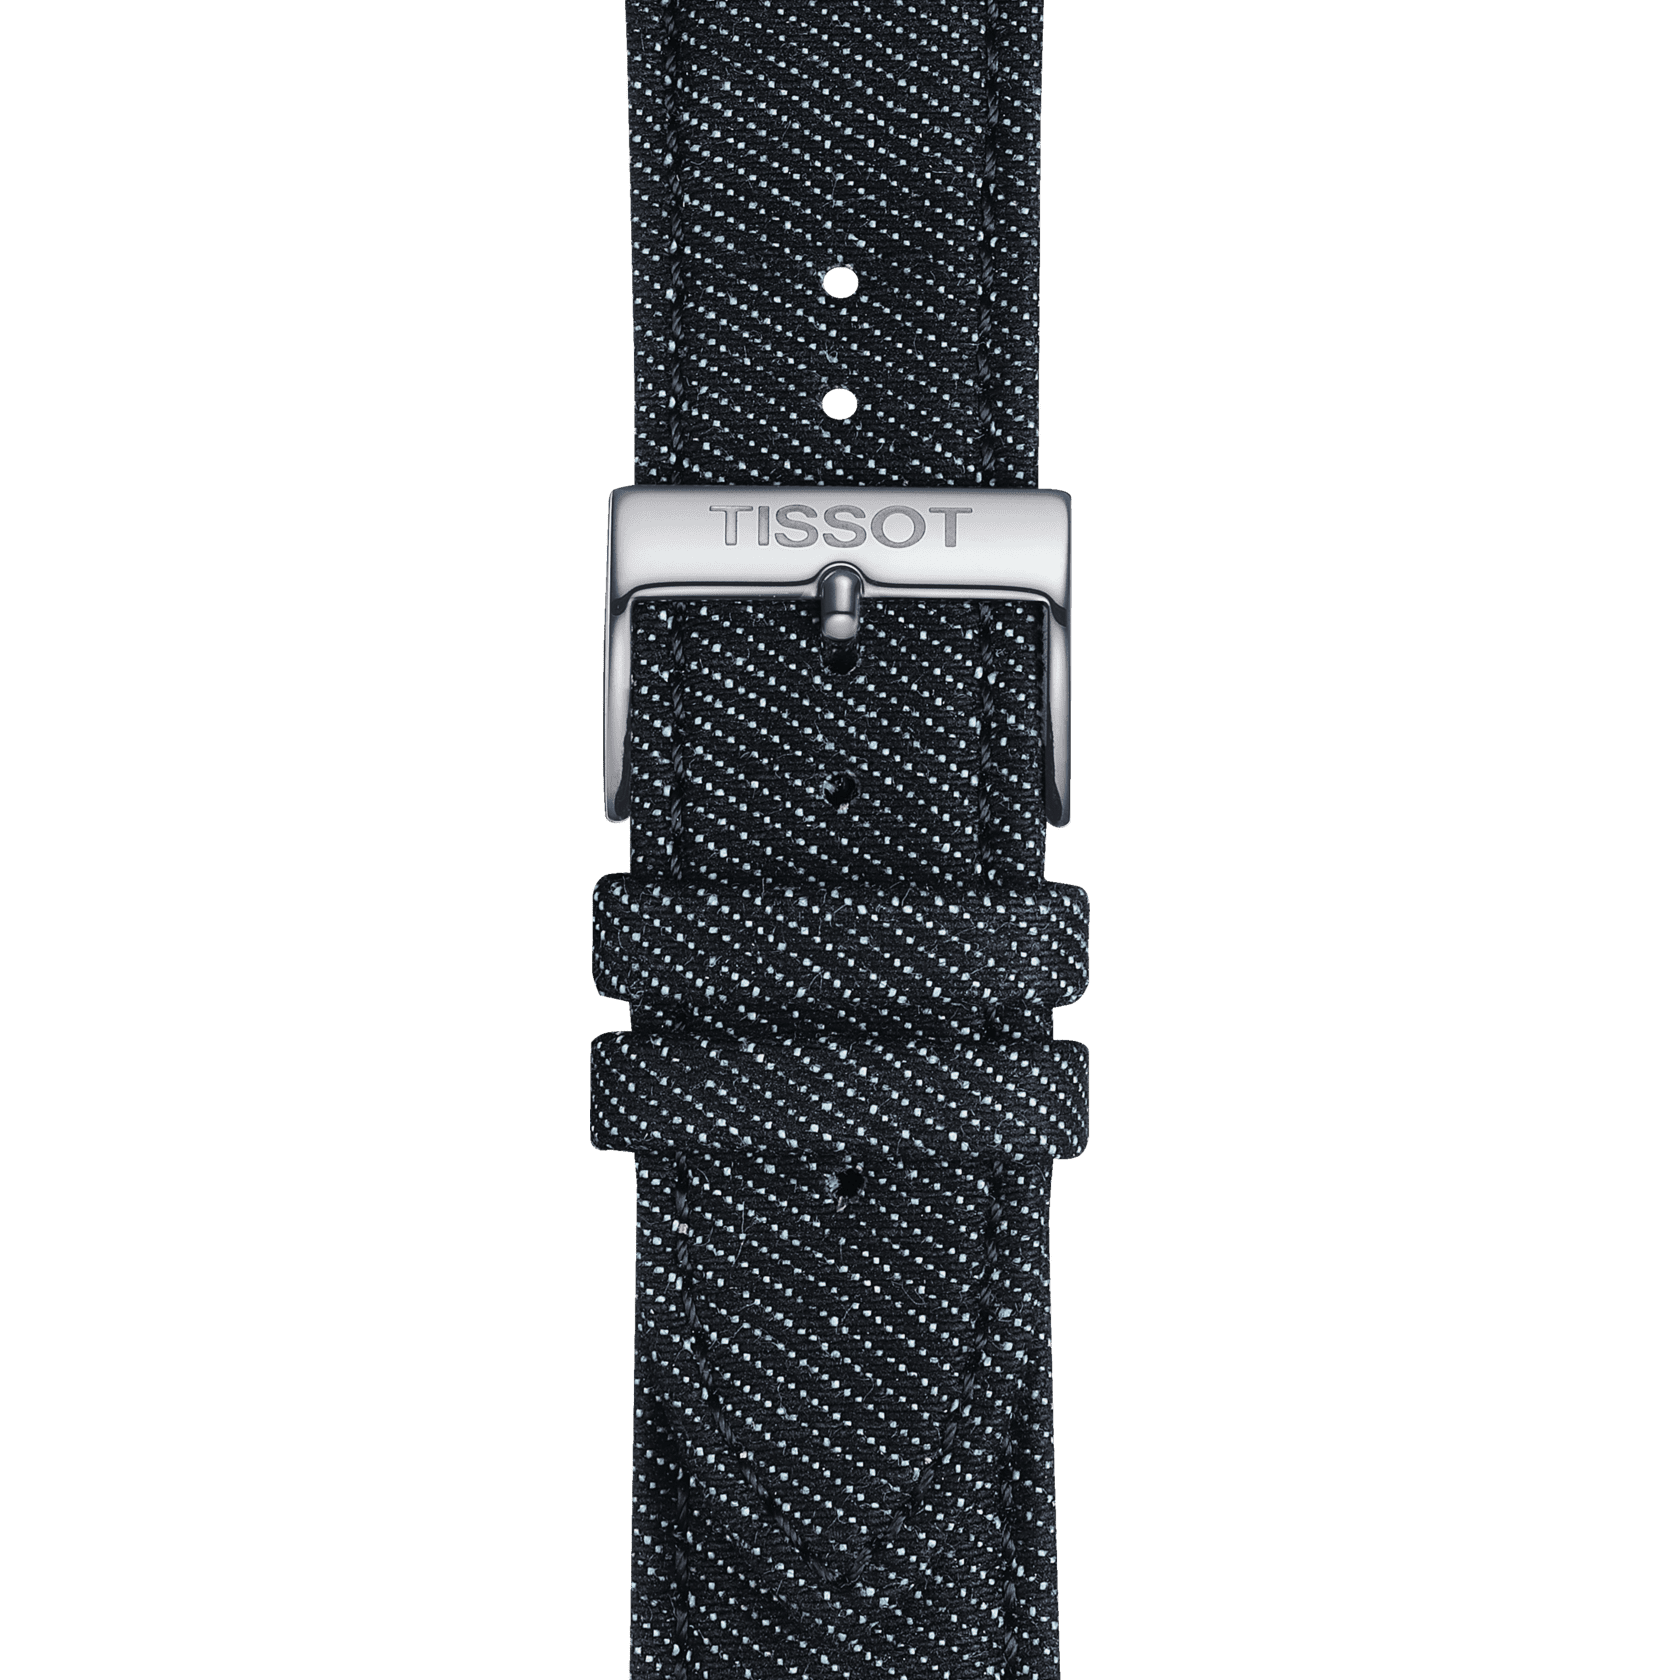 Tissot official blue textile strap lugs 22 mm